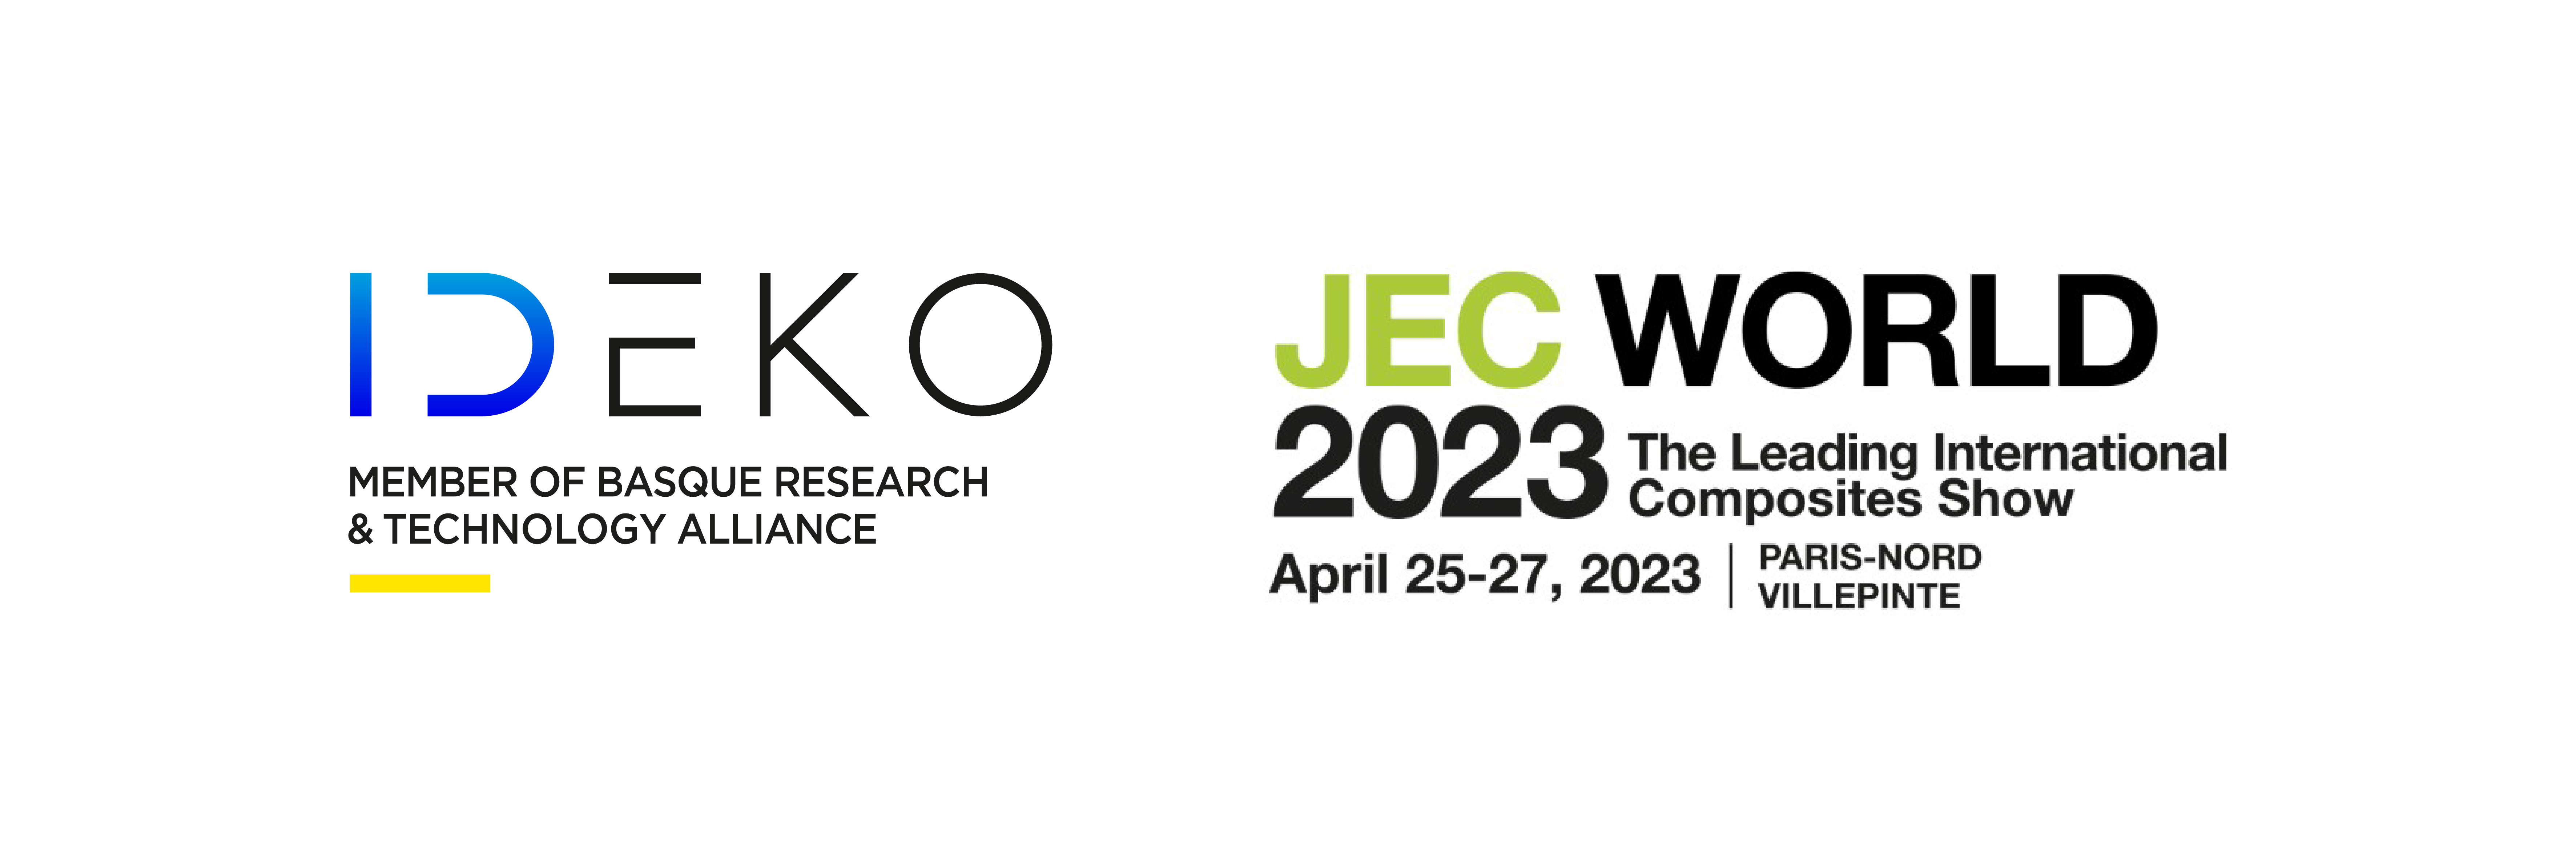 Logos de los participantes en el stand del JEC2023 